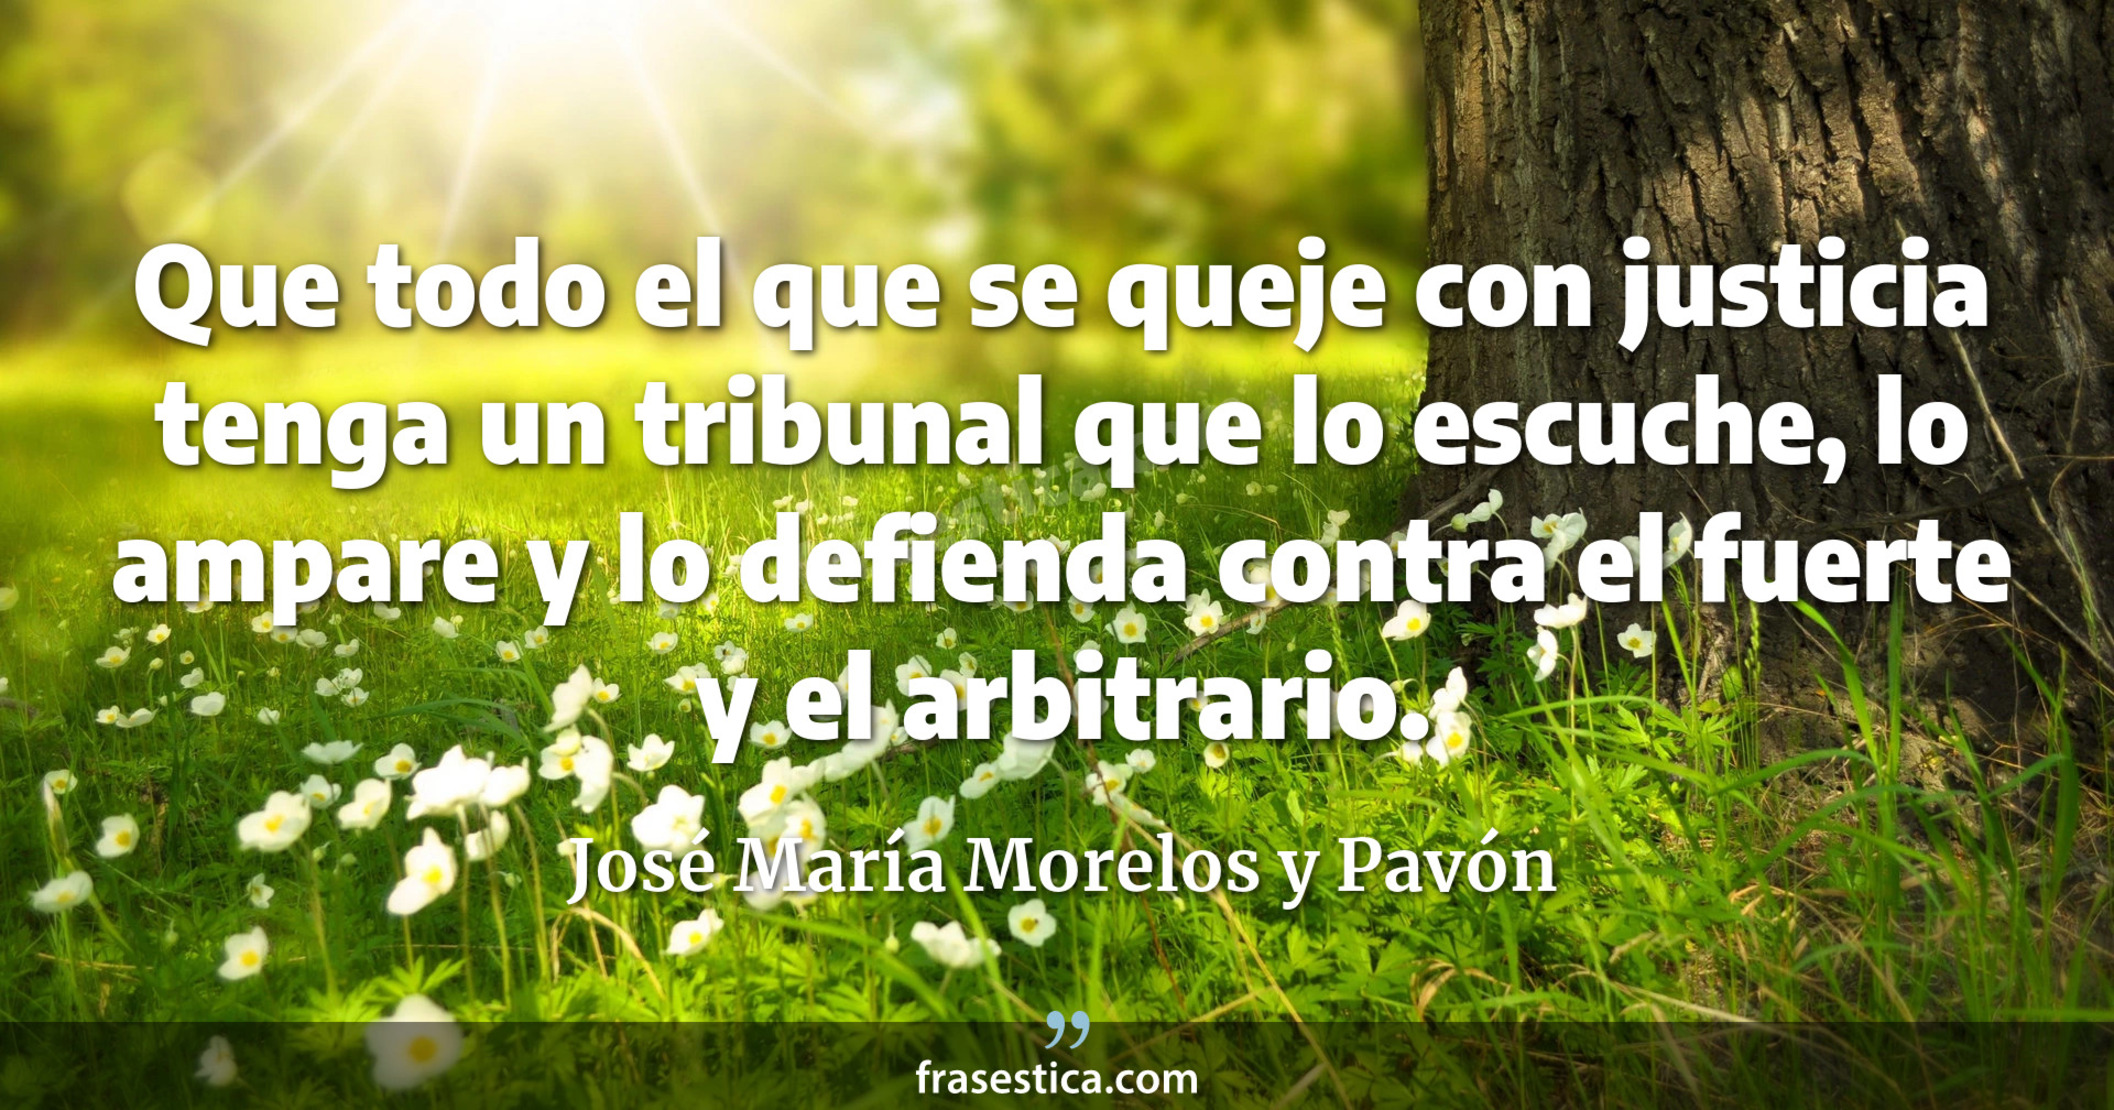 Que todo el que se queje con justicia tenga un tribunal que lo escuche, lo ampare y lo defienda contra el fuerte y el arbitrario. - José María Morelos y Pavón